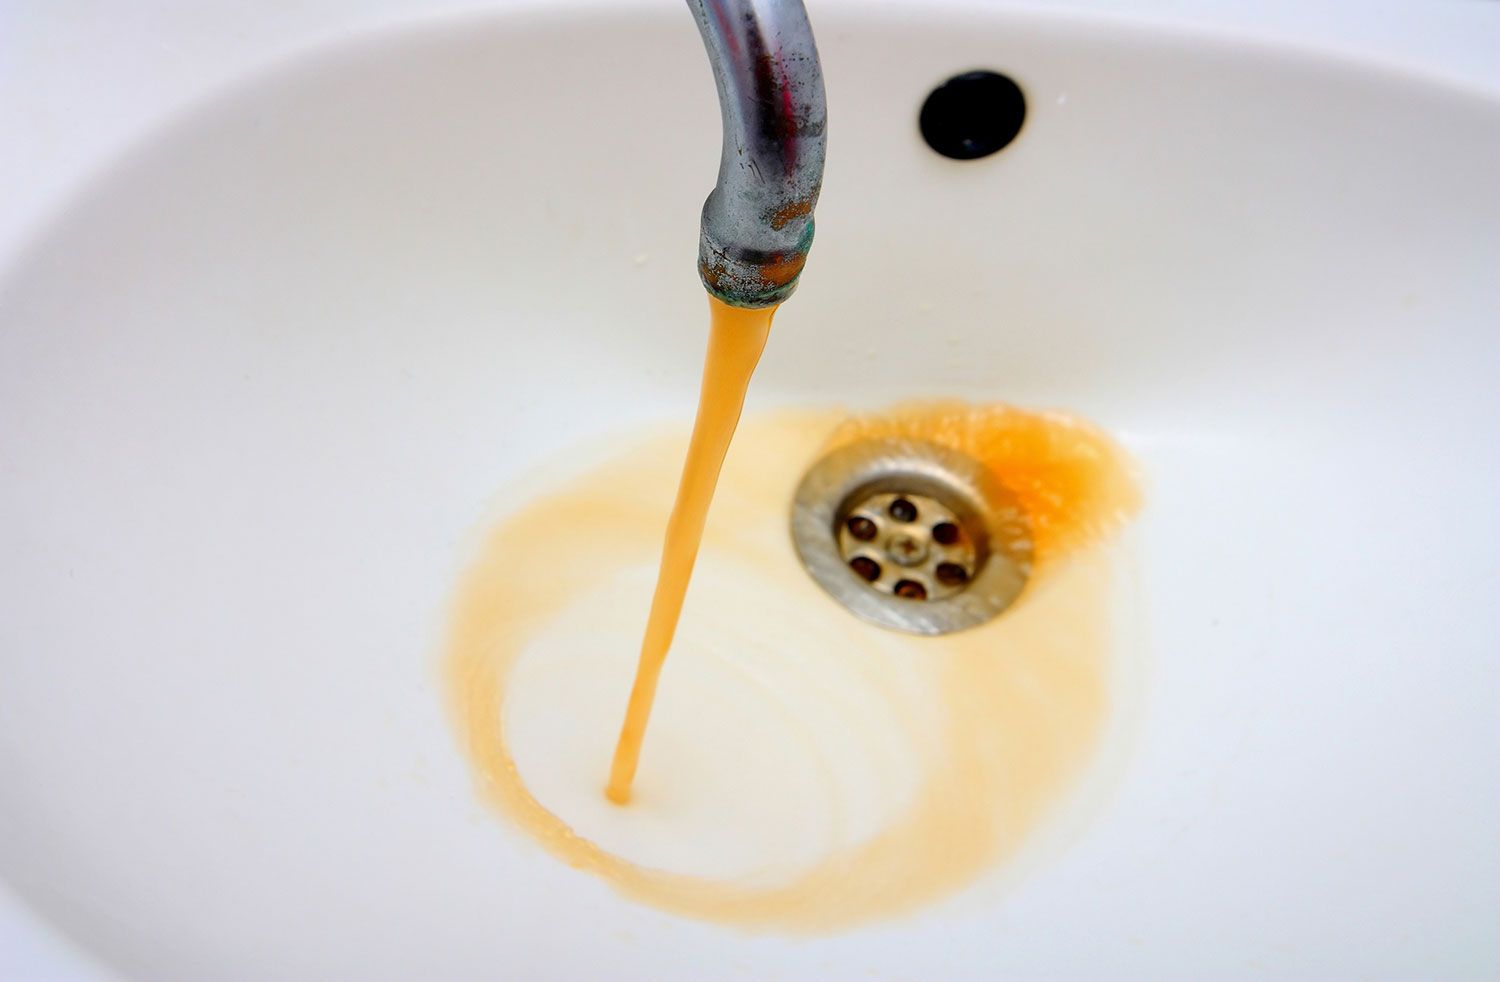 Без паники! В одном из поселков Копейска из кранов потечет оранжевая вода